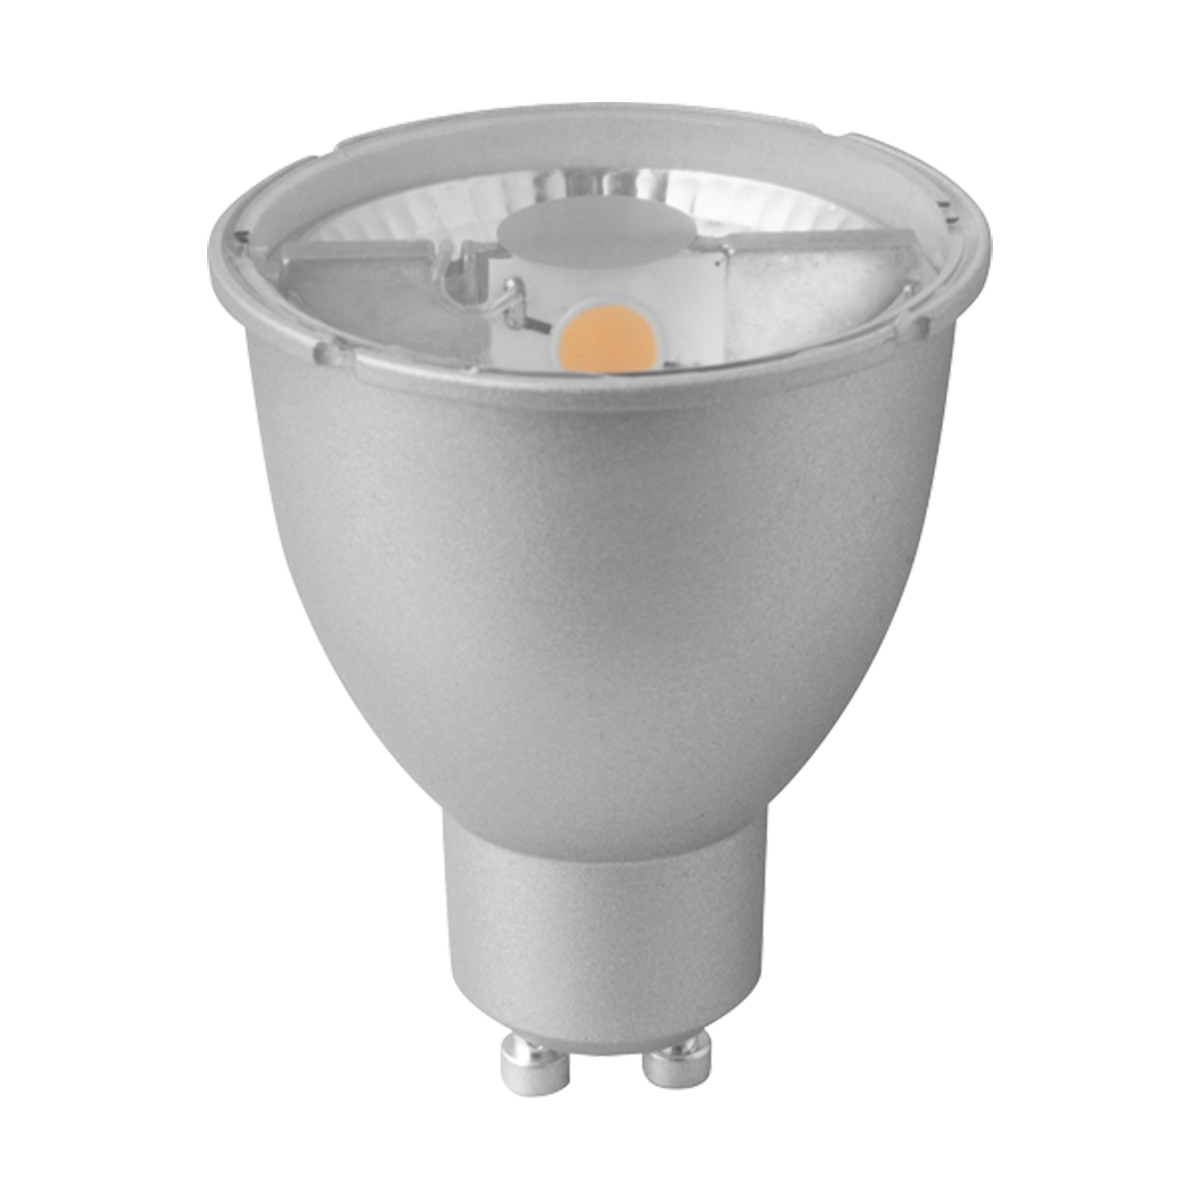 مصباح ميجامان- موفر للطاقة 7 وات اللون أبيض ساطع GU10